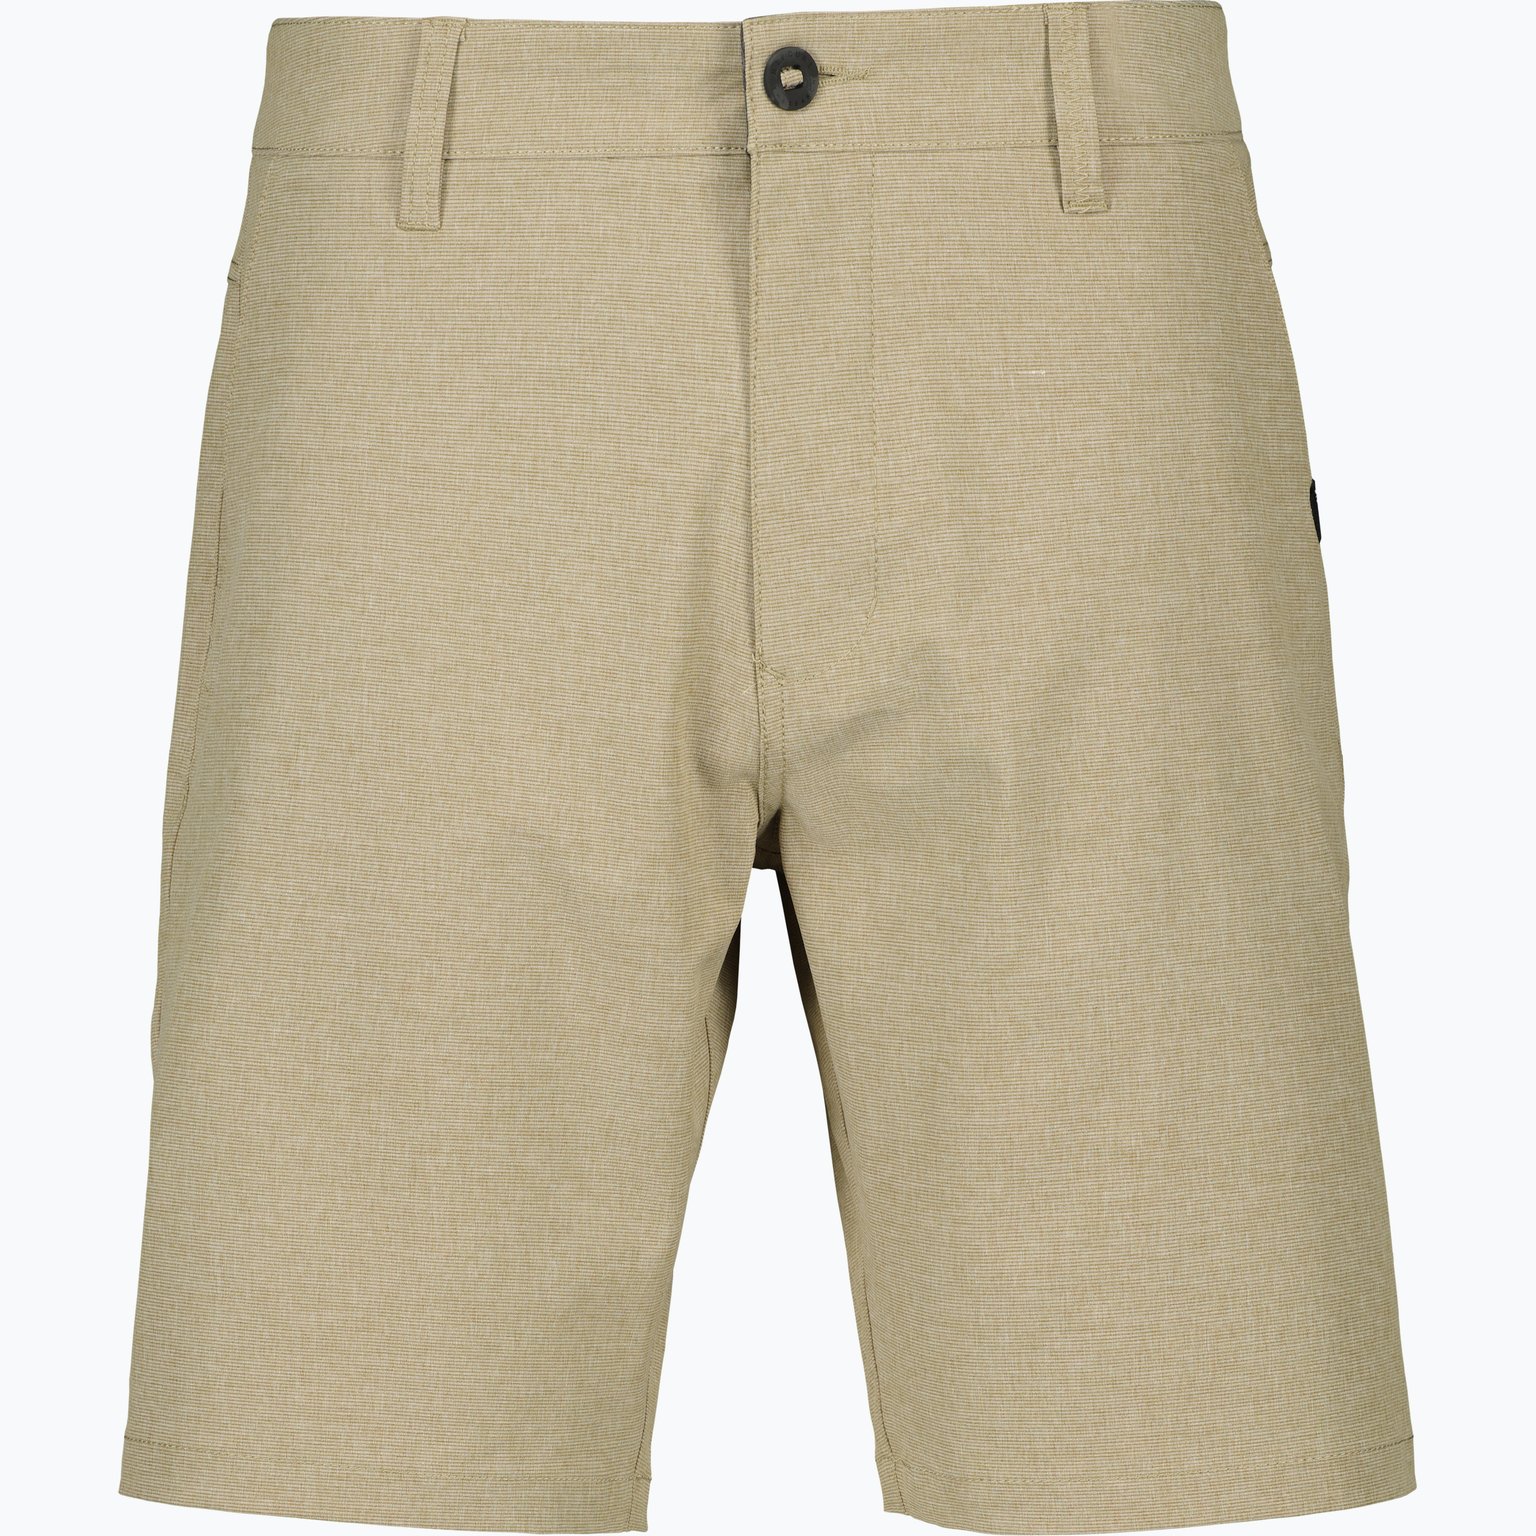 Boardwalk Phase Nineteen shorts